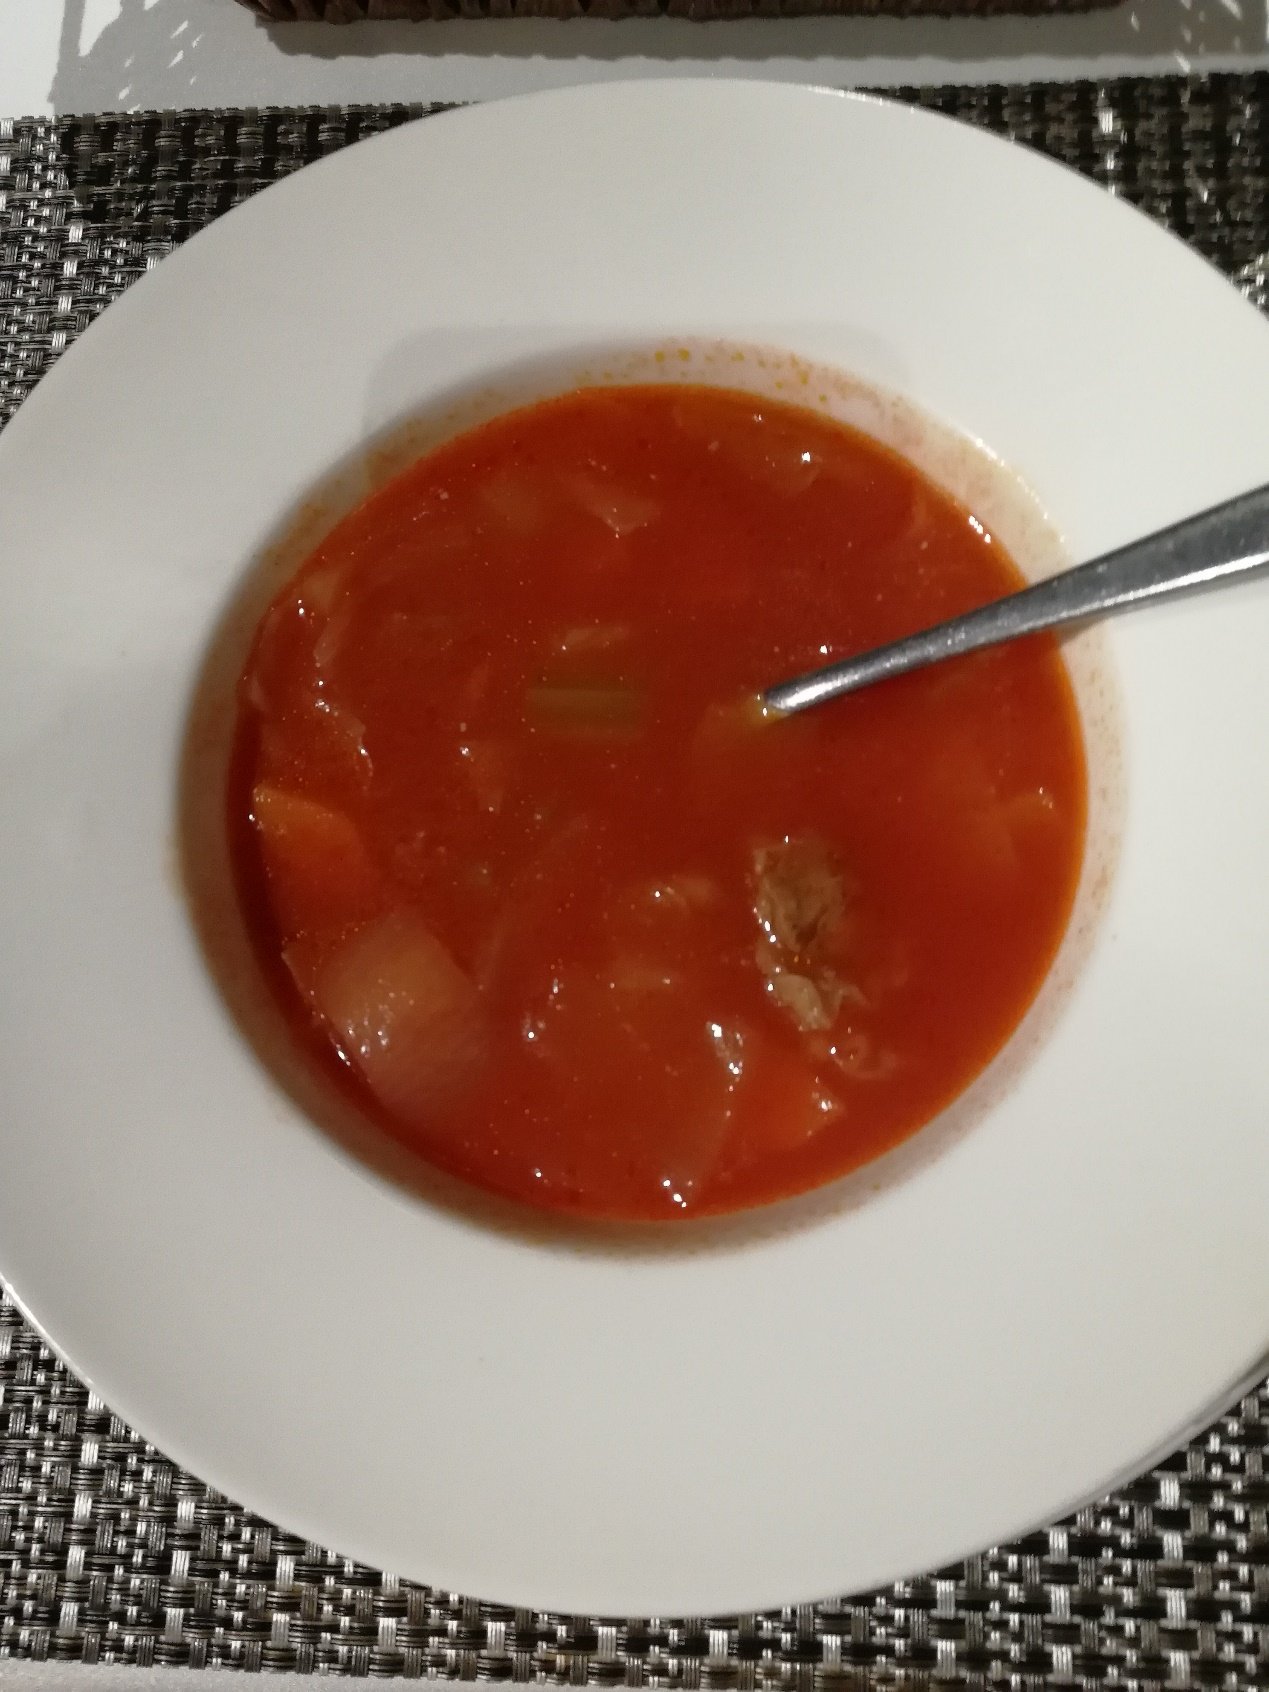 苏波汤,是一种俄式红菜汤,有西红柿牛腩菠菜制作而成的